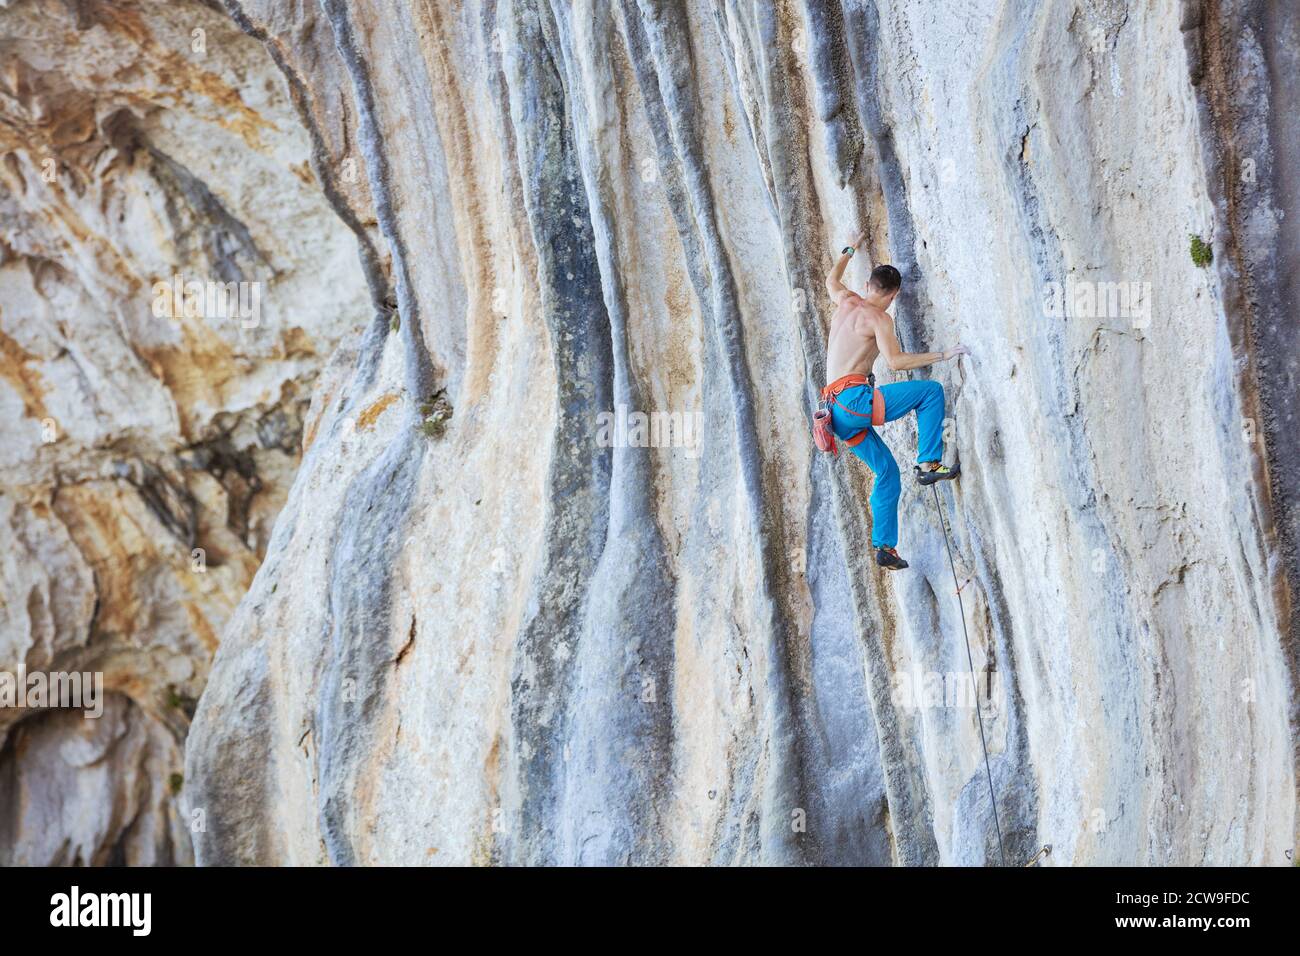 Kaukasischer junger Mann, der eine schwierige Route auf einer Klippe erklimmt Stockfoto